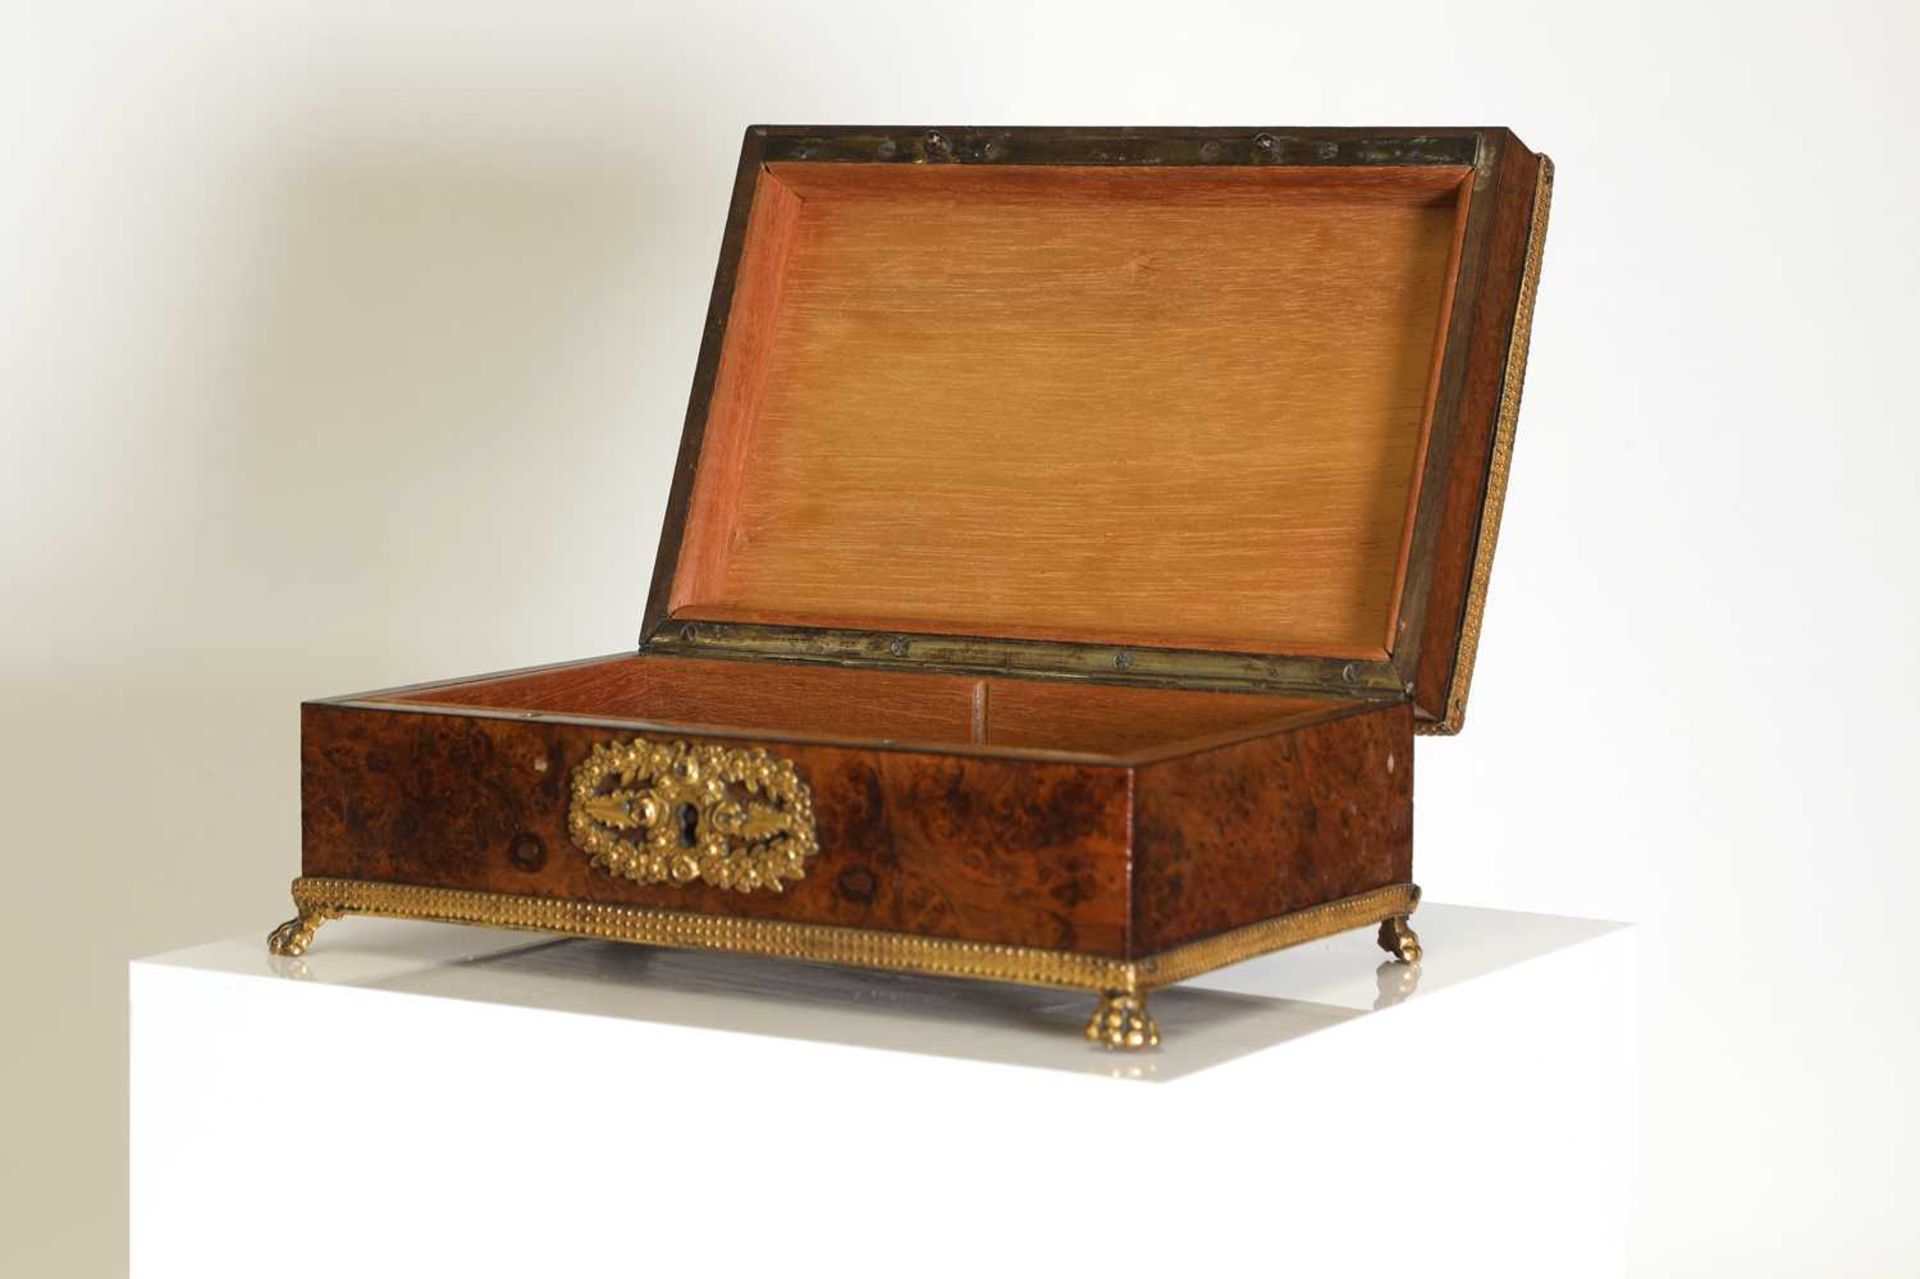 A Palais-Royal burr wood box, - Image 5 of 20